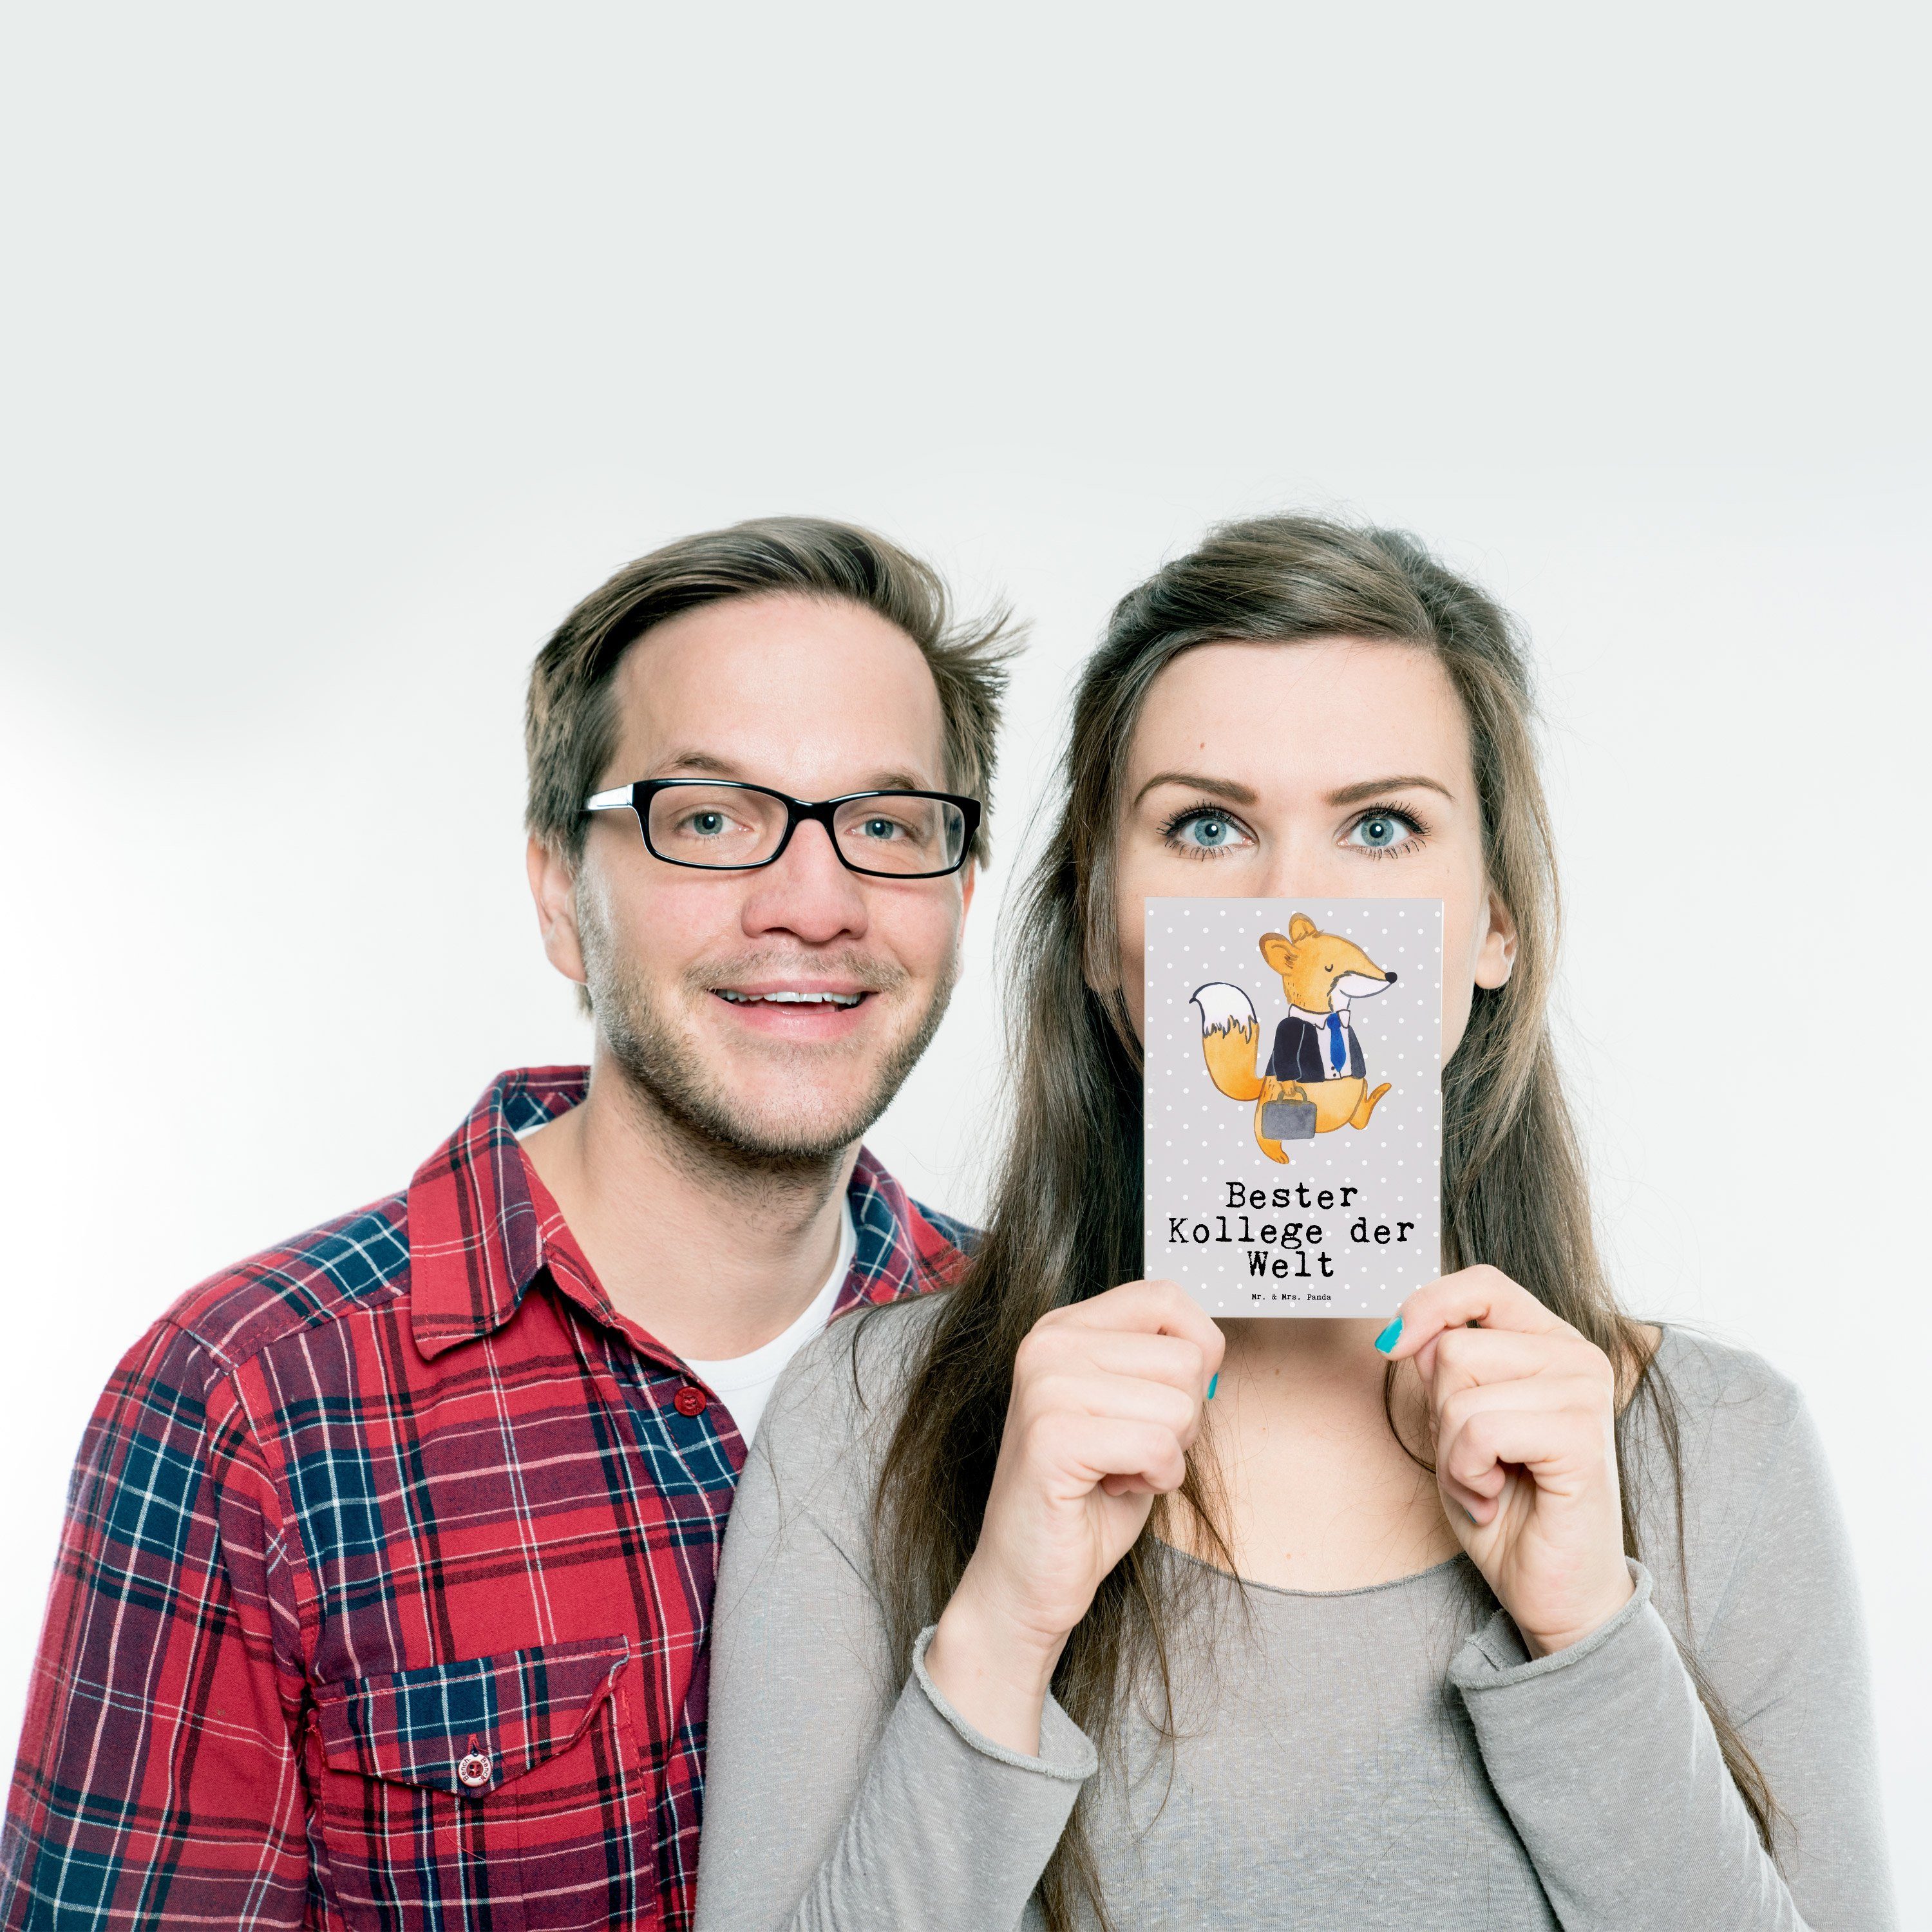 Mr. & Mrs. Panda Grau Fuchs Pastell der Berufsgenoss - - Bester Postkarte Welt Geschenk, Kollege